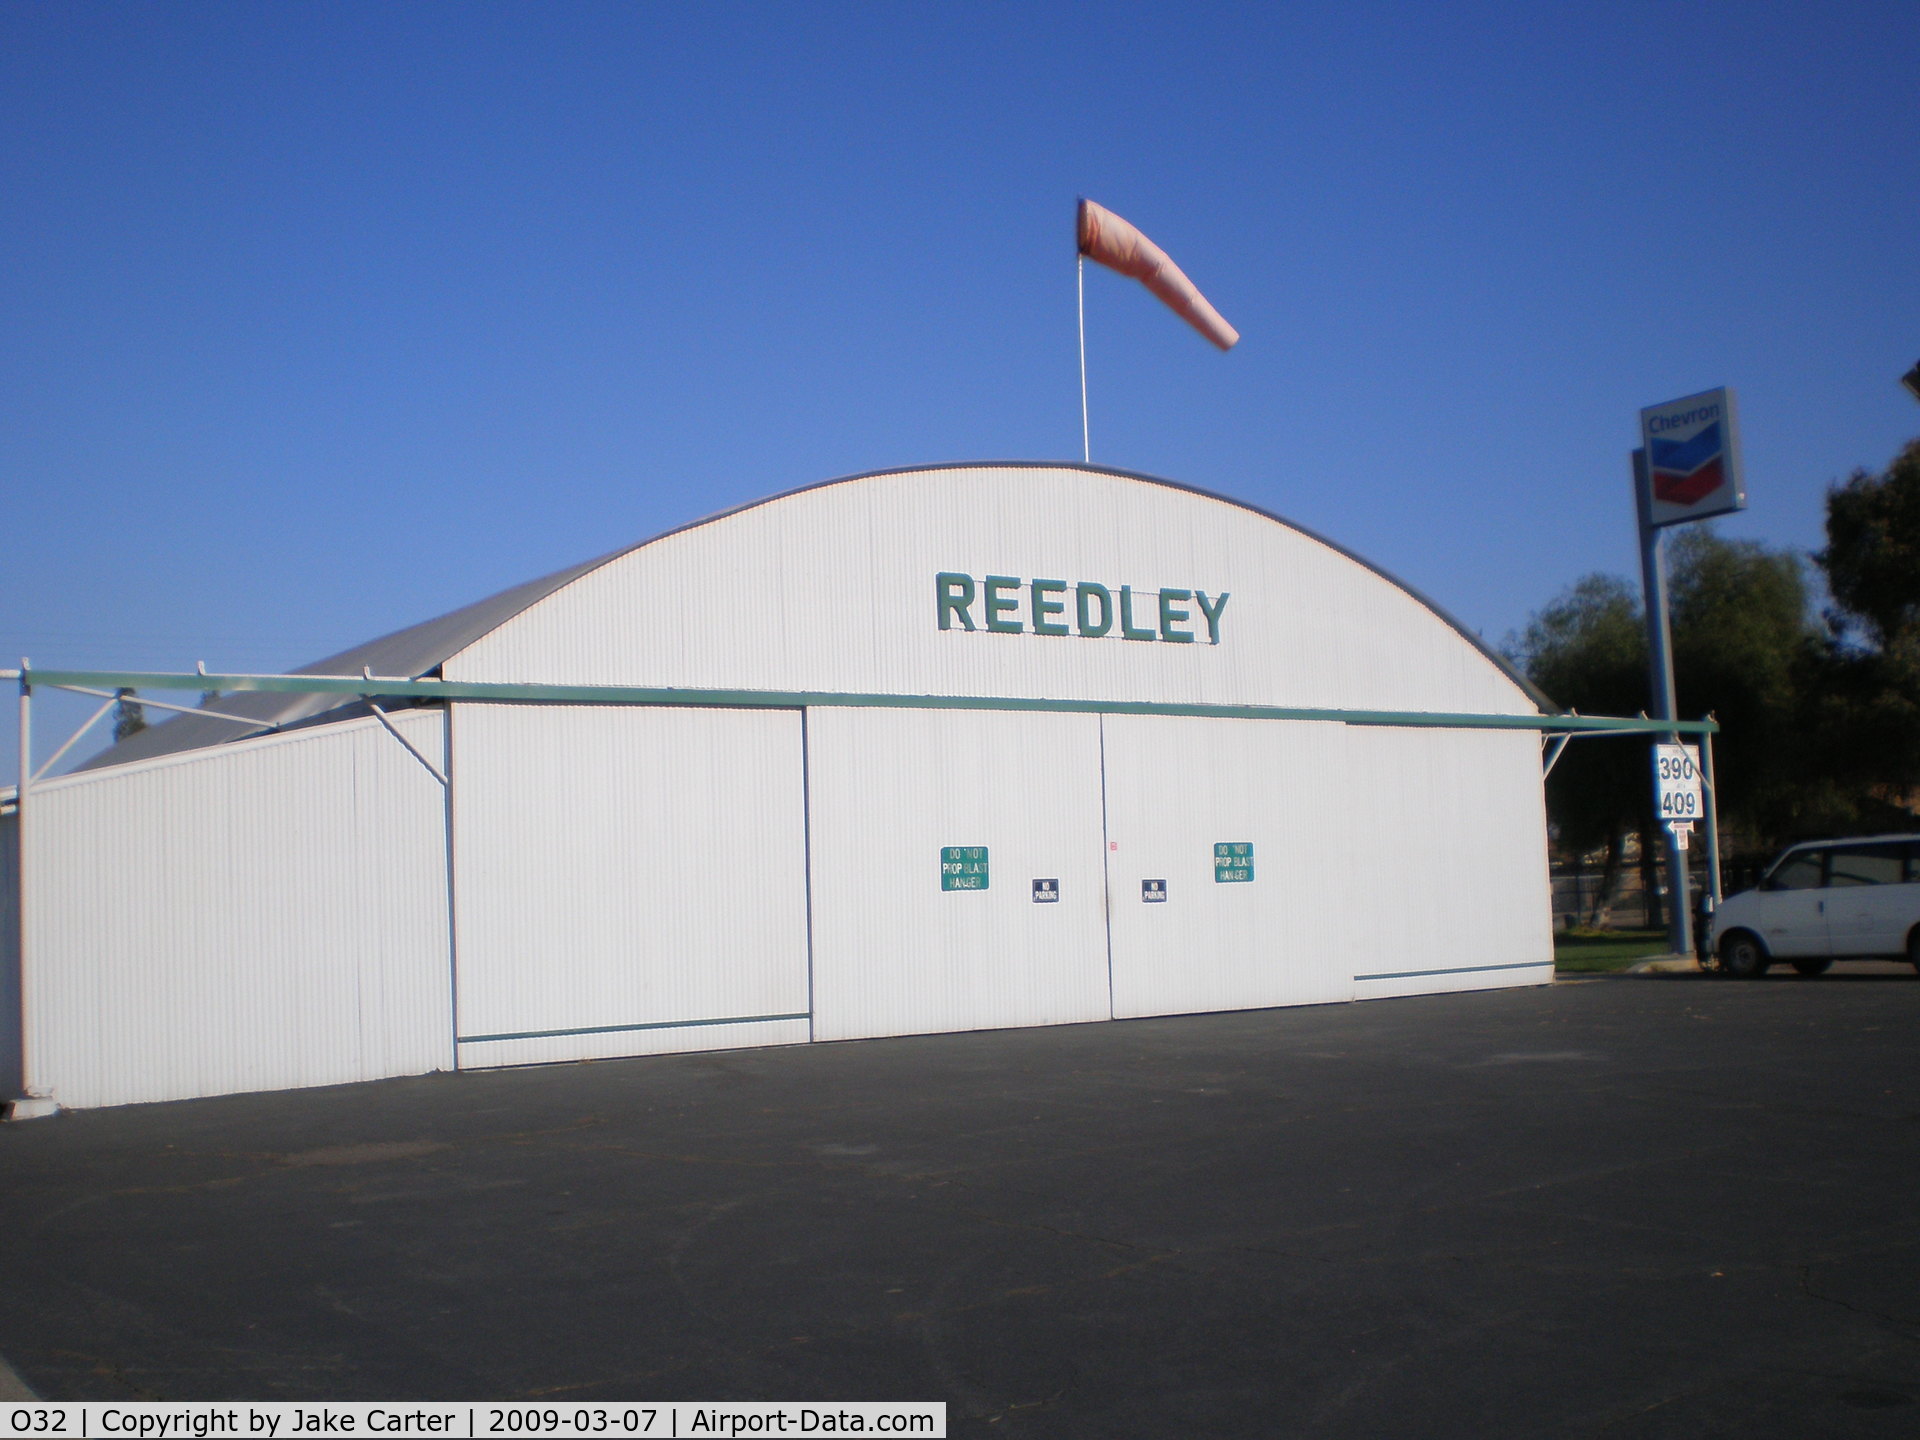 Reedley Municipal Airport (O32) - Main Hangar at Reeley.